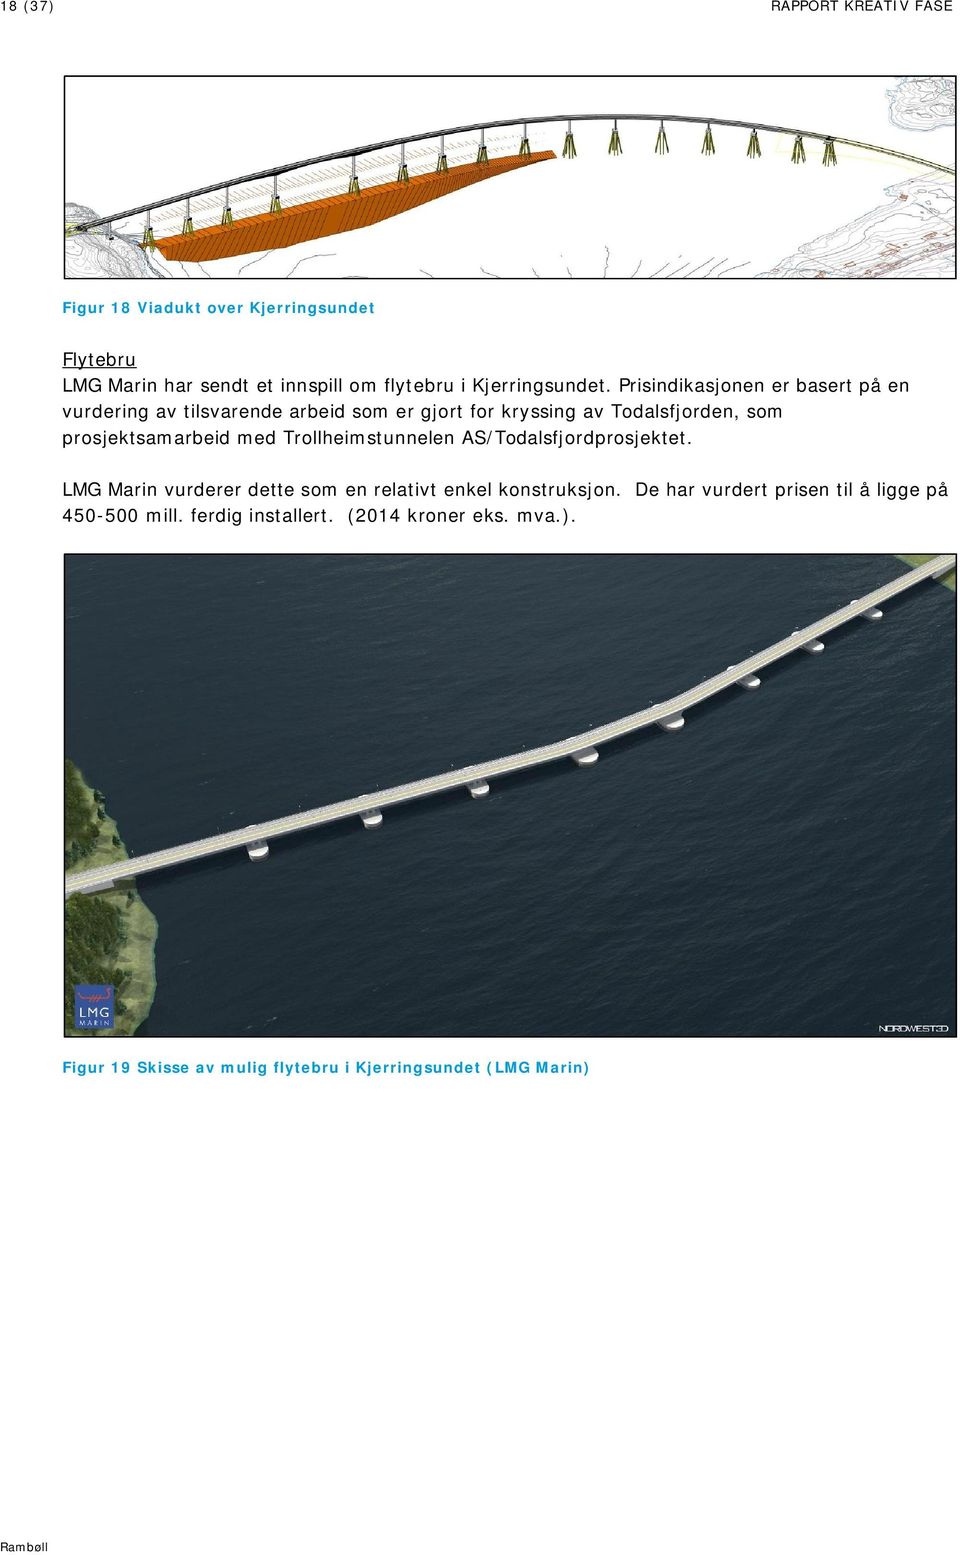 Trollheimstunnelen AS/Todalsfjordprosjektet. LMG Marin vurderer dette som en relativt enkel konstruksjon.